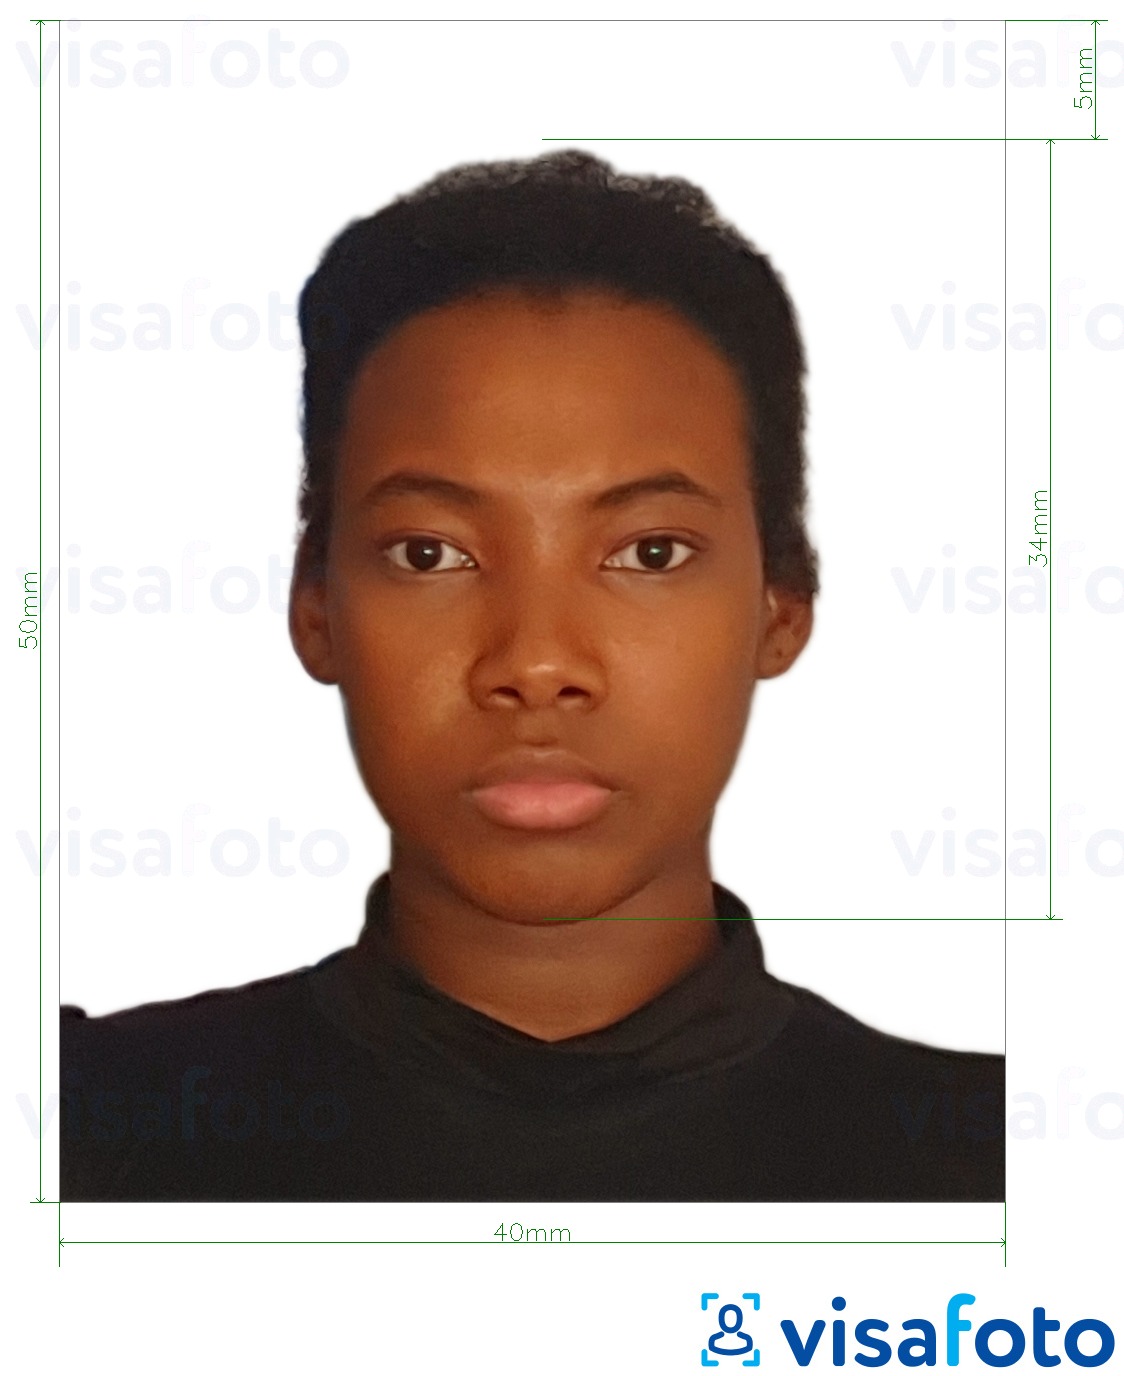 多米尼加共和国签证 4x5 厘米 的标准尺寸照片示例